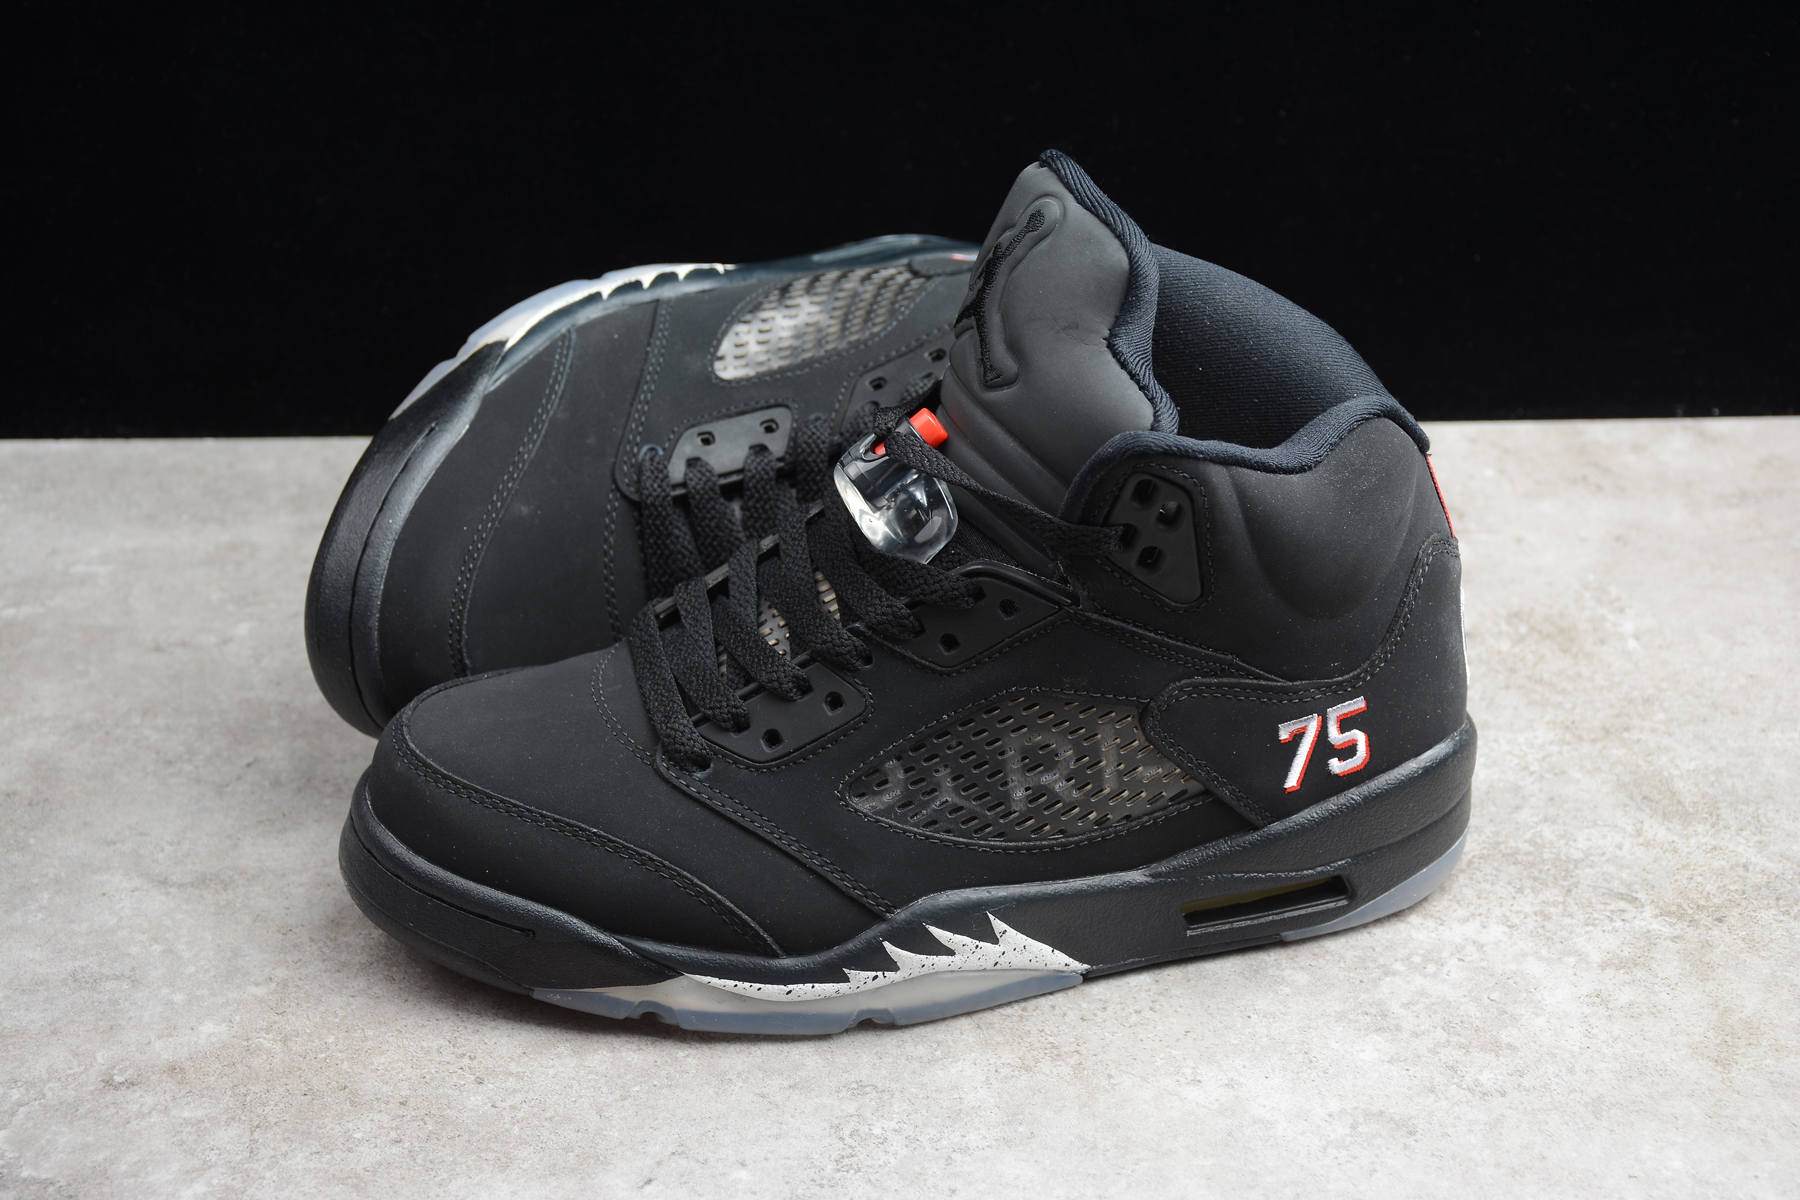 New Air Jordan 5 Black with 75 Number